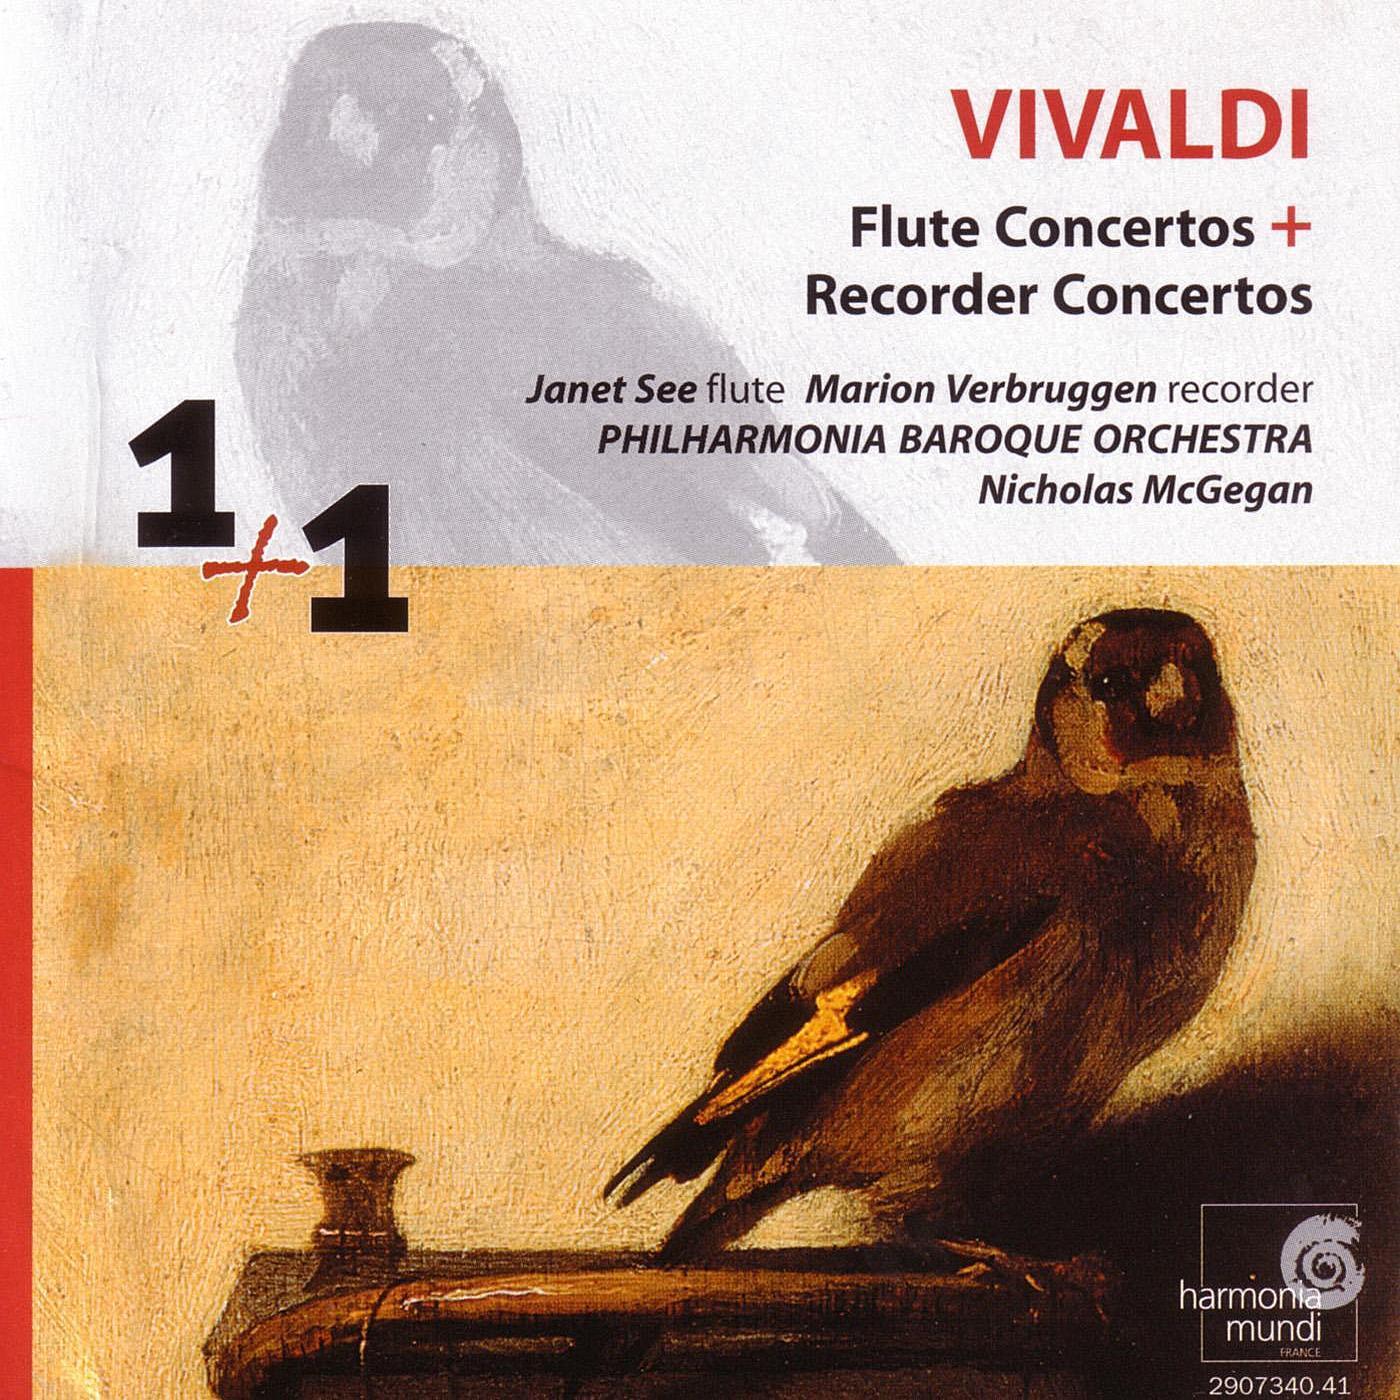 Recorder Concerto in F Major, RV 433 "La Tempesta di mare": I. Allegro